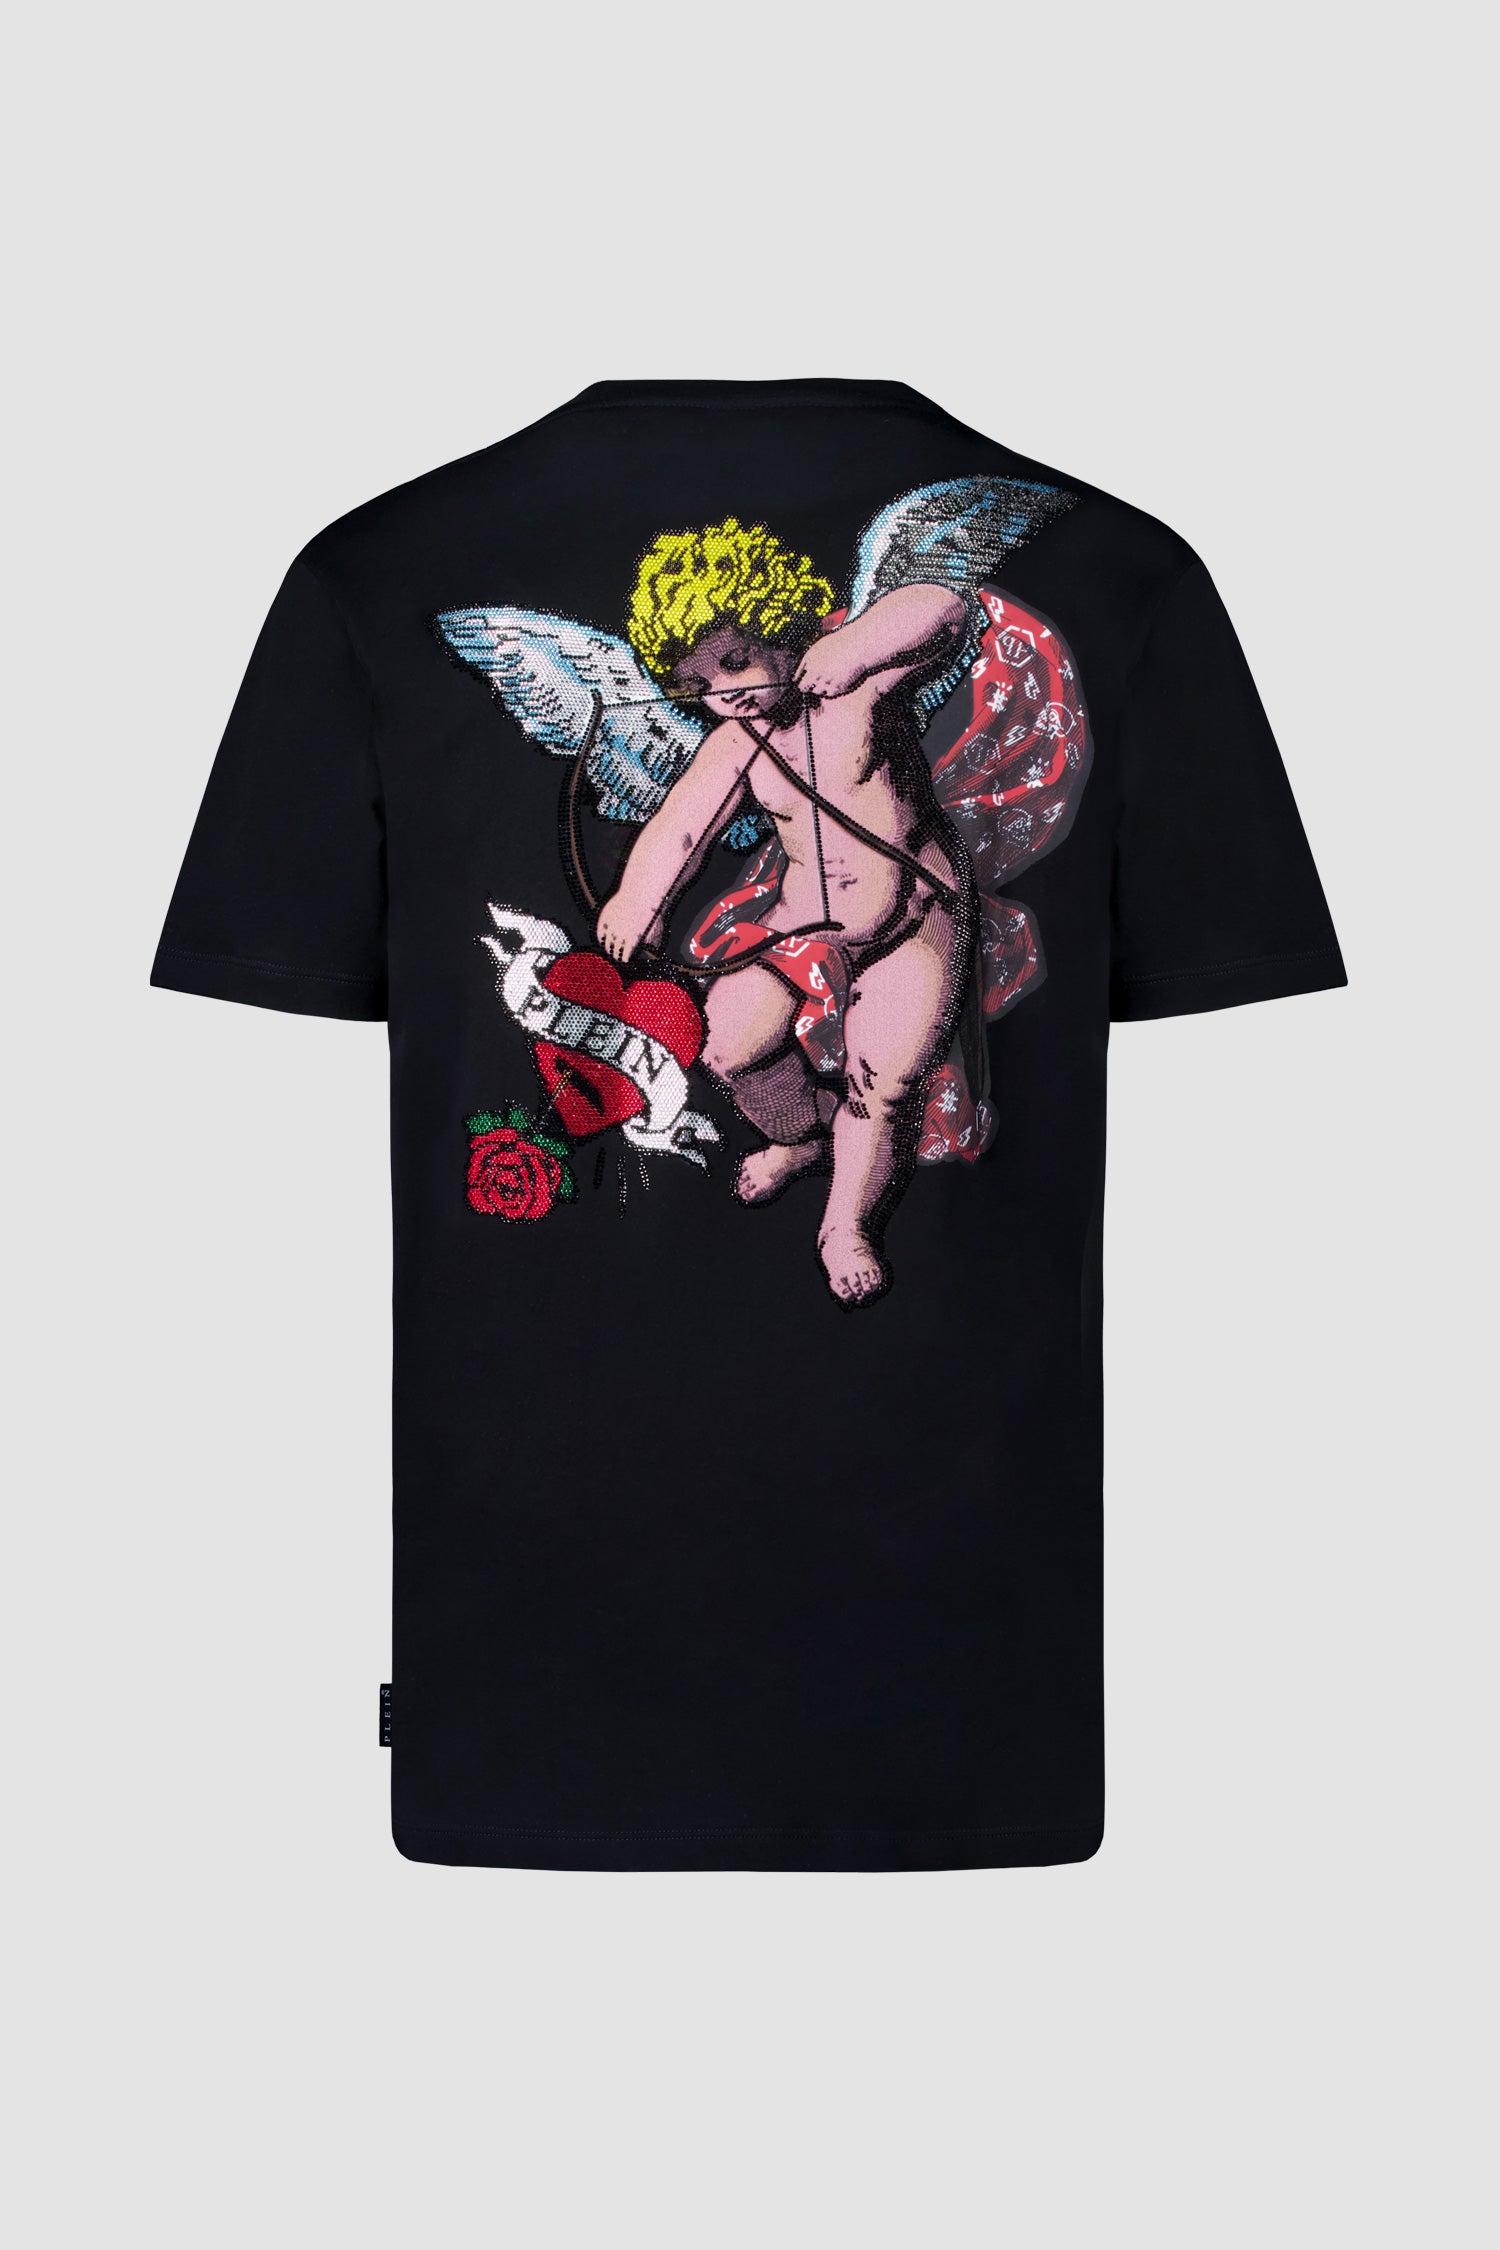 Philipp Plein Round Neck SS Love Angel T-Shirt